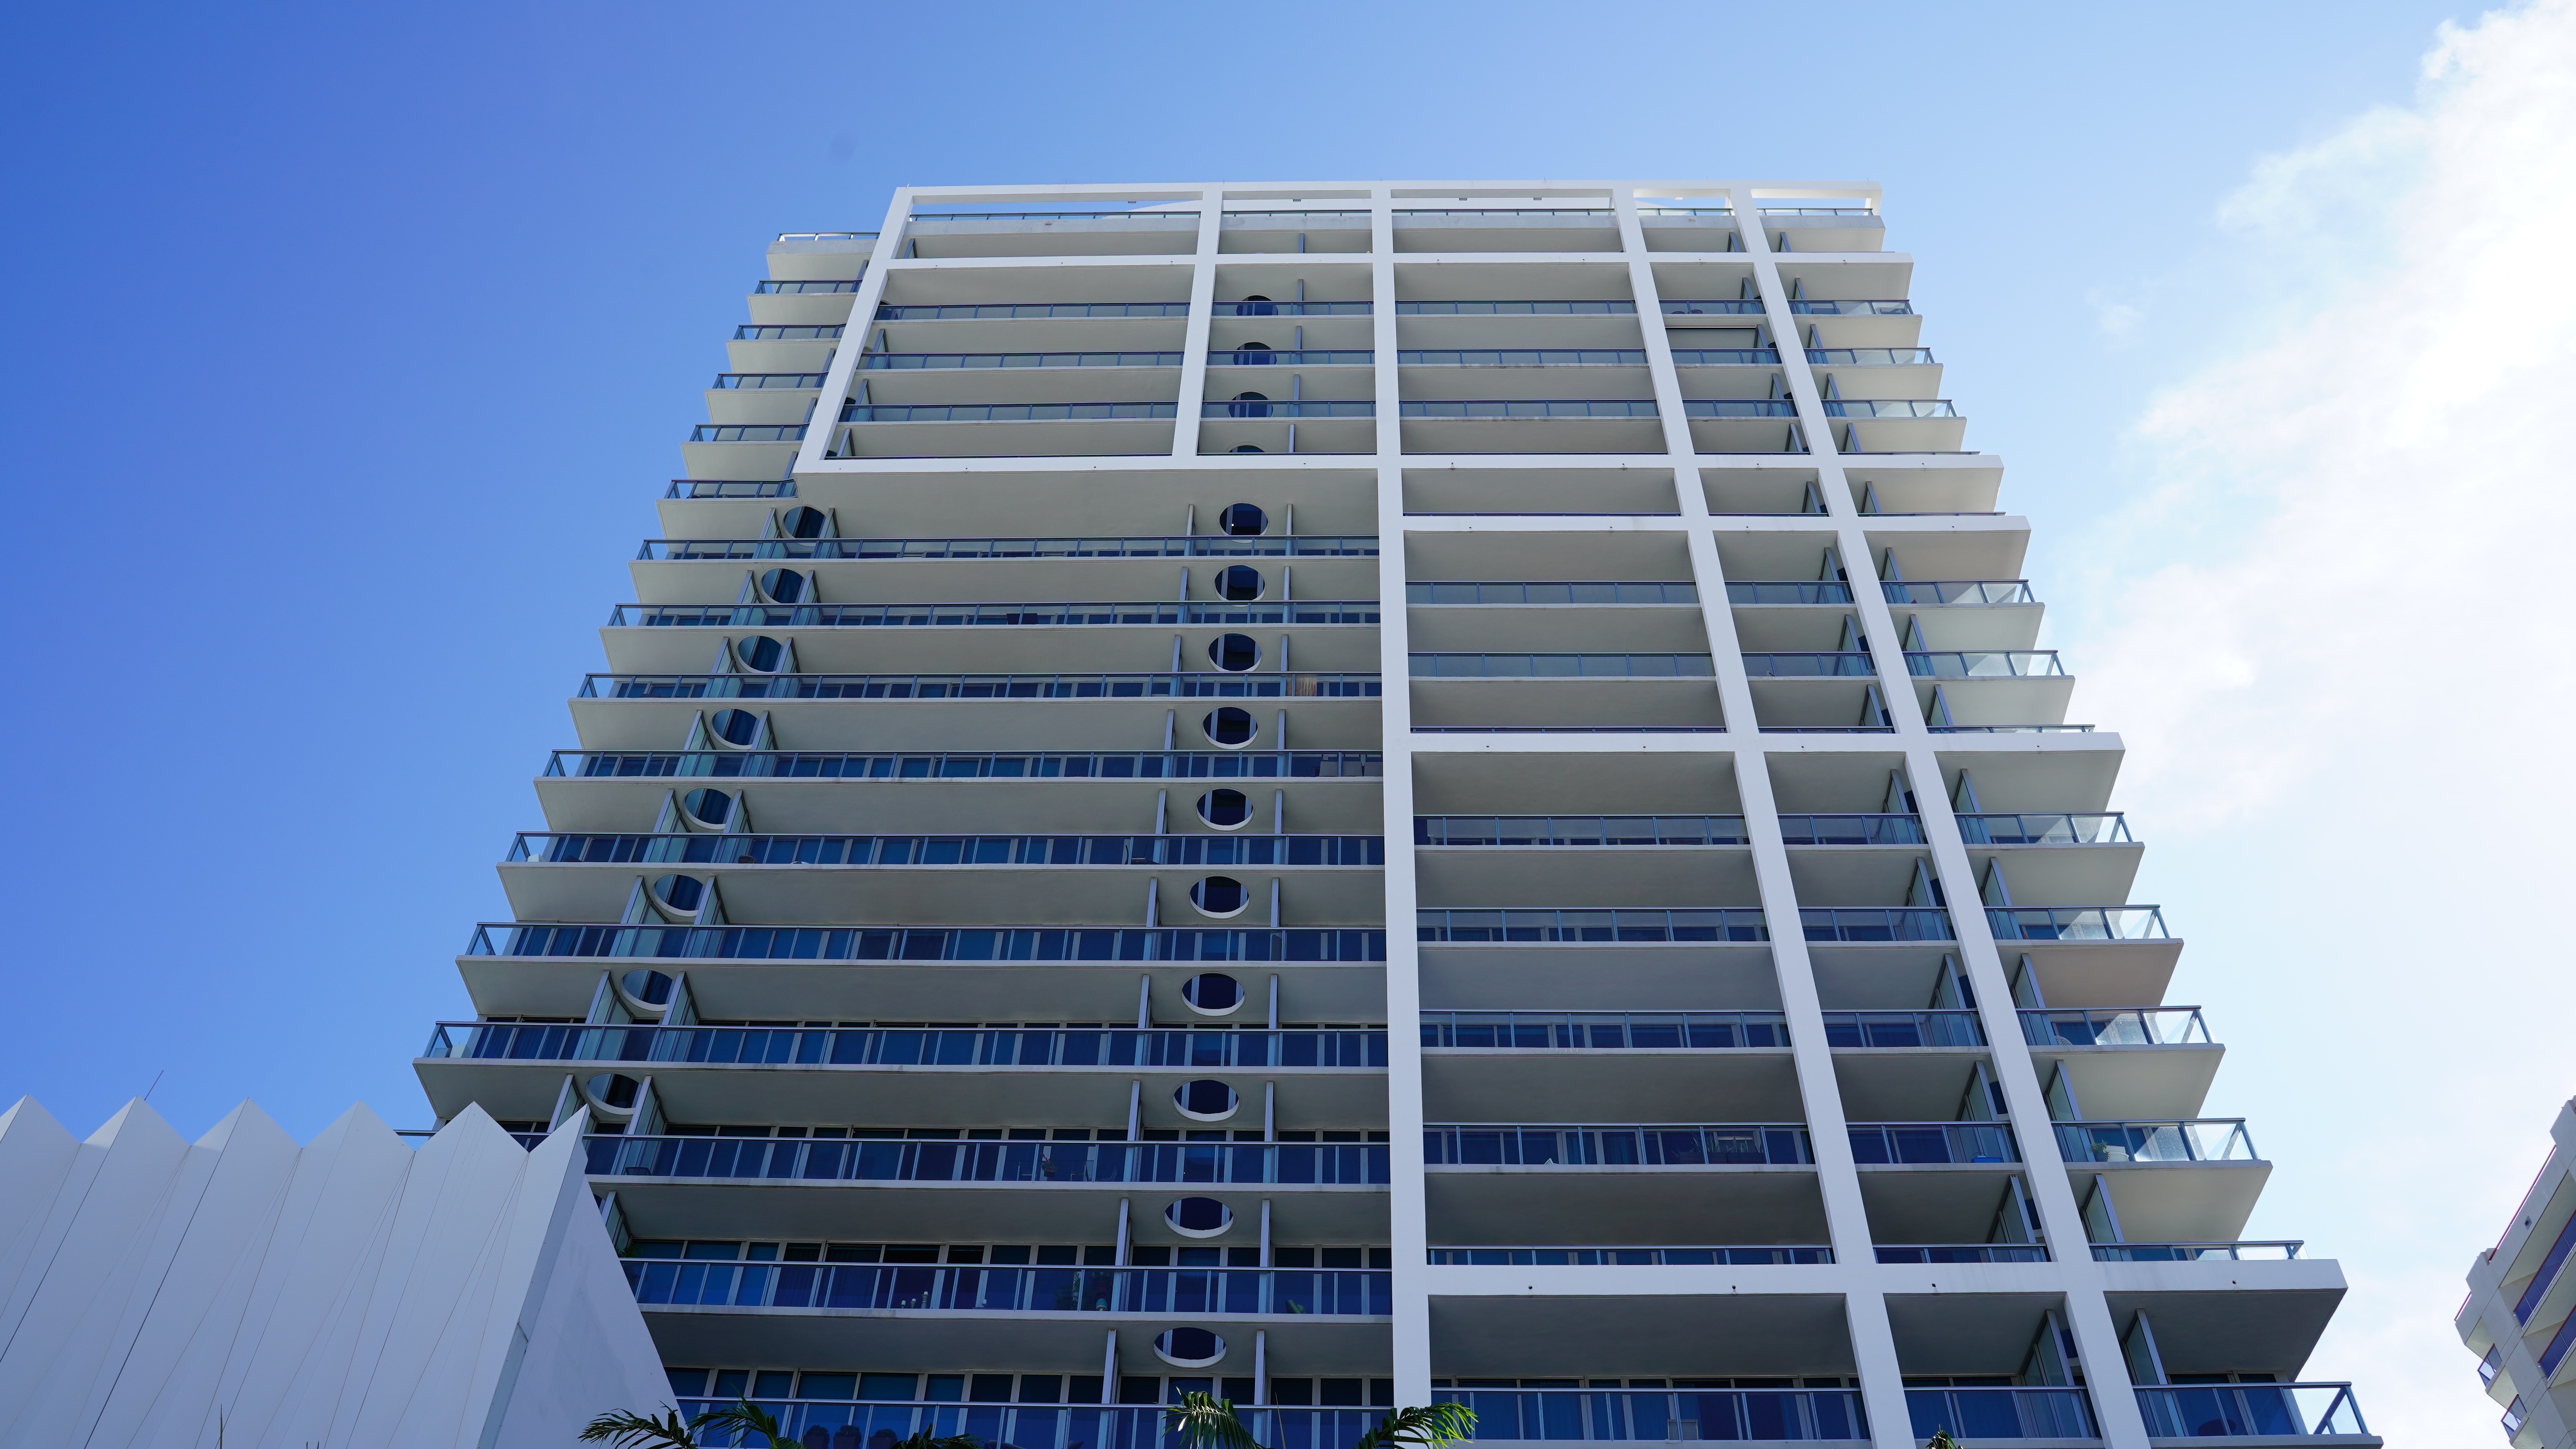 4. Carillon Miami Beach building at 6899 Collins Avenue, North Shore, Miami Beach, FL 33141